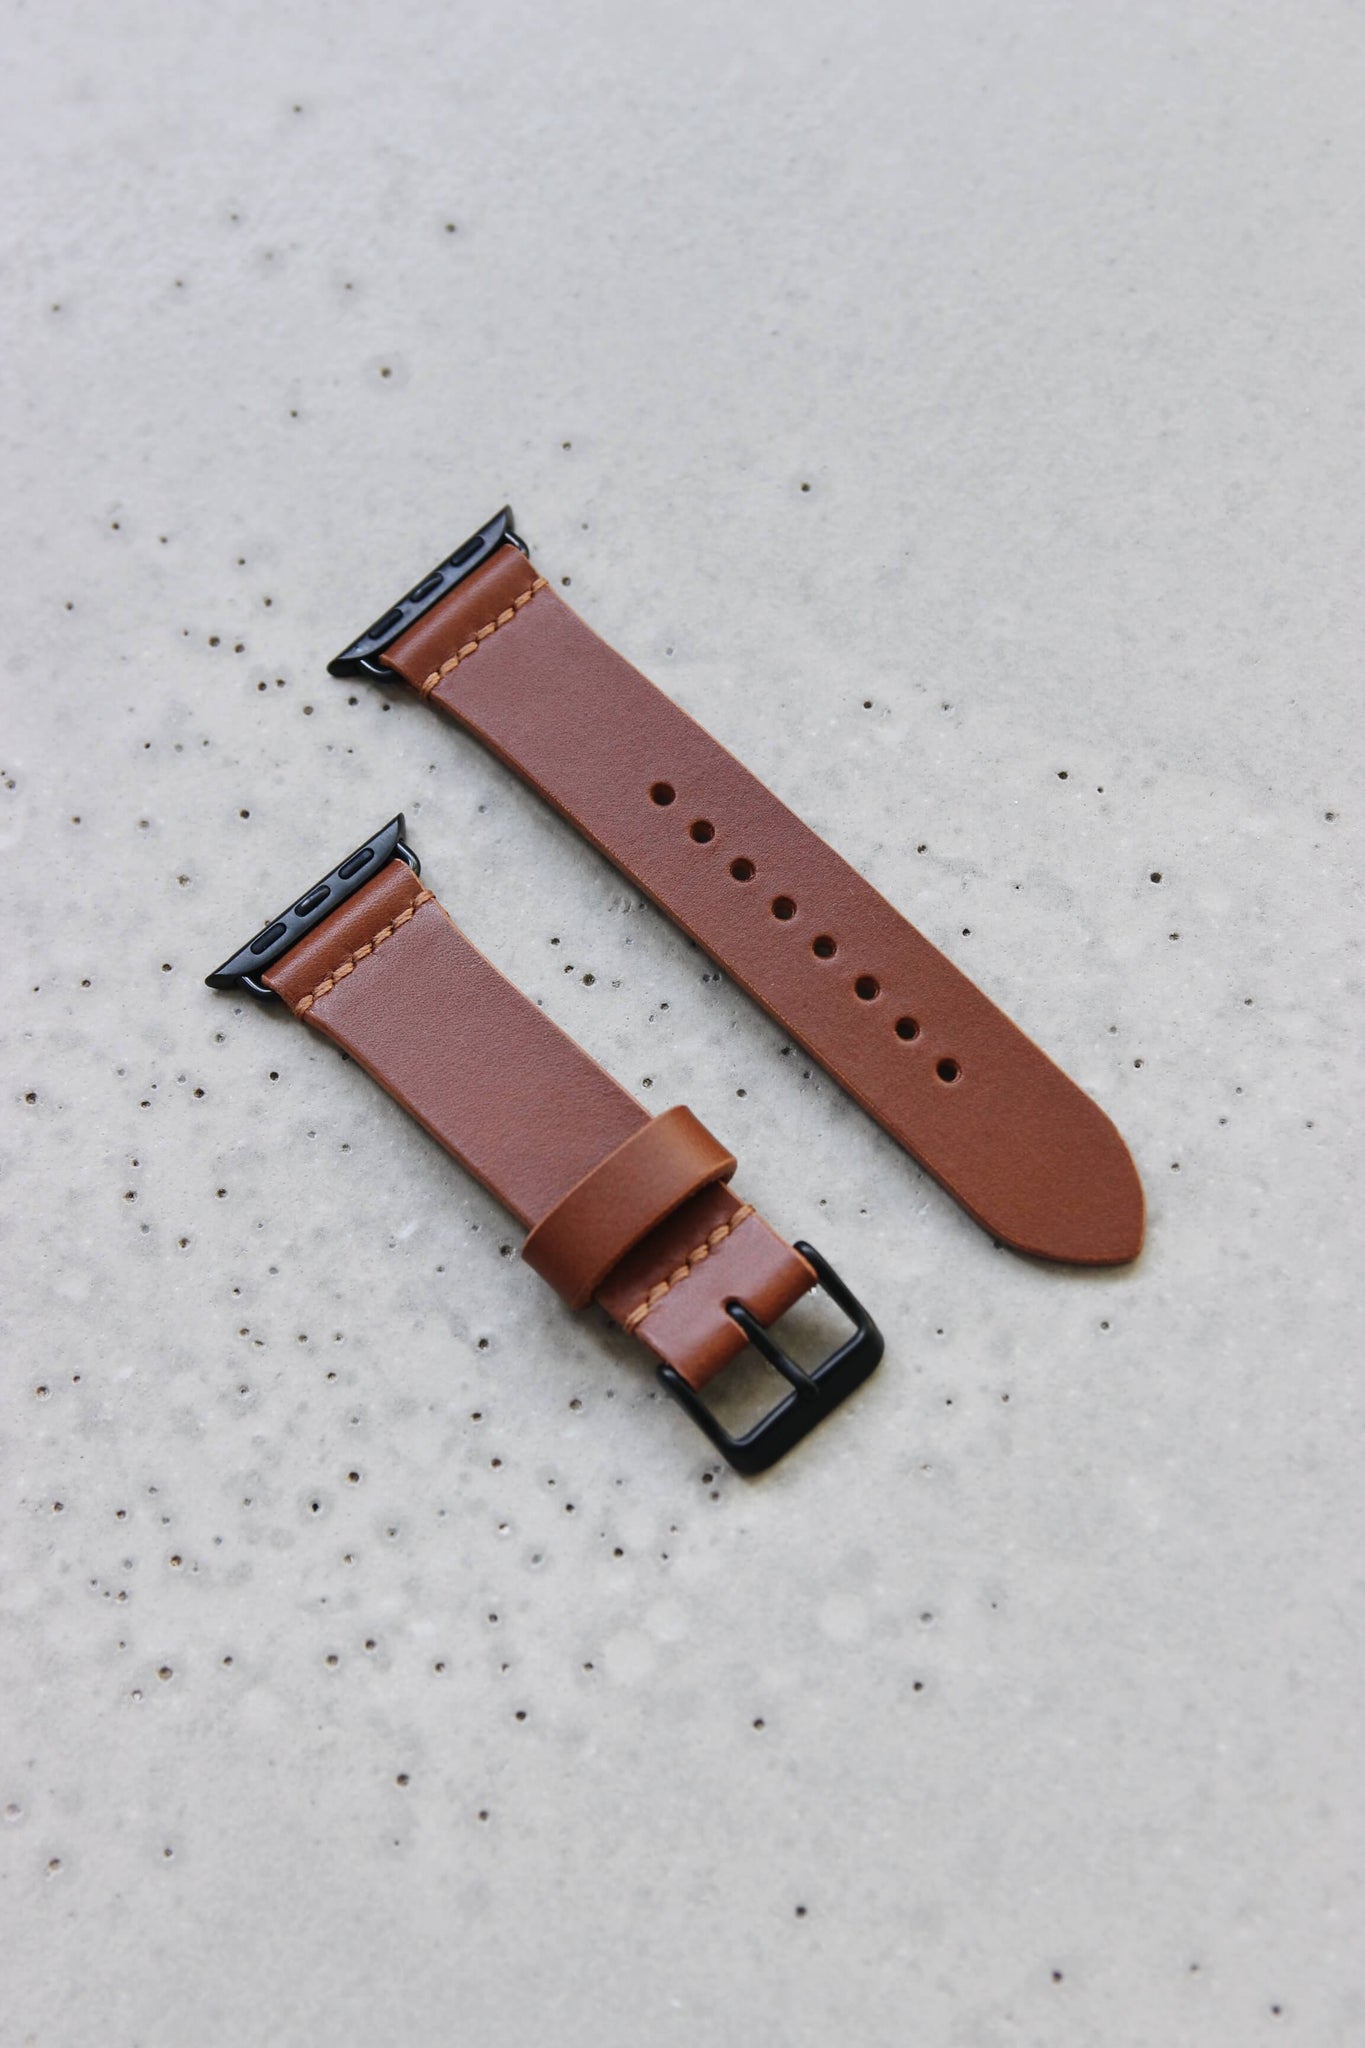 Apple Watch Lederband in Braun auf einem Betonuntergrund.